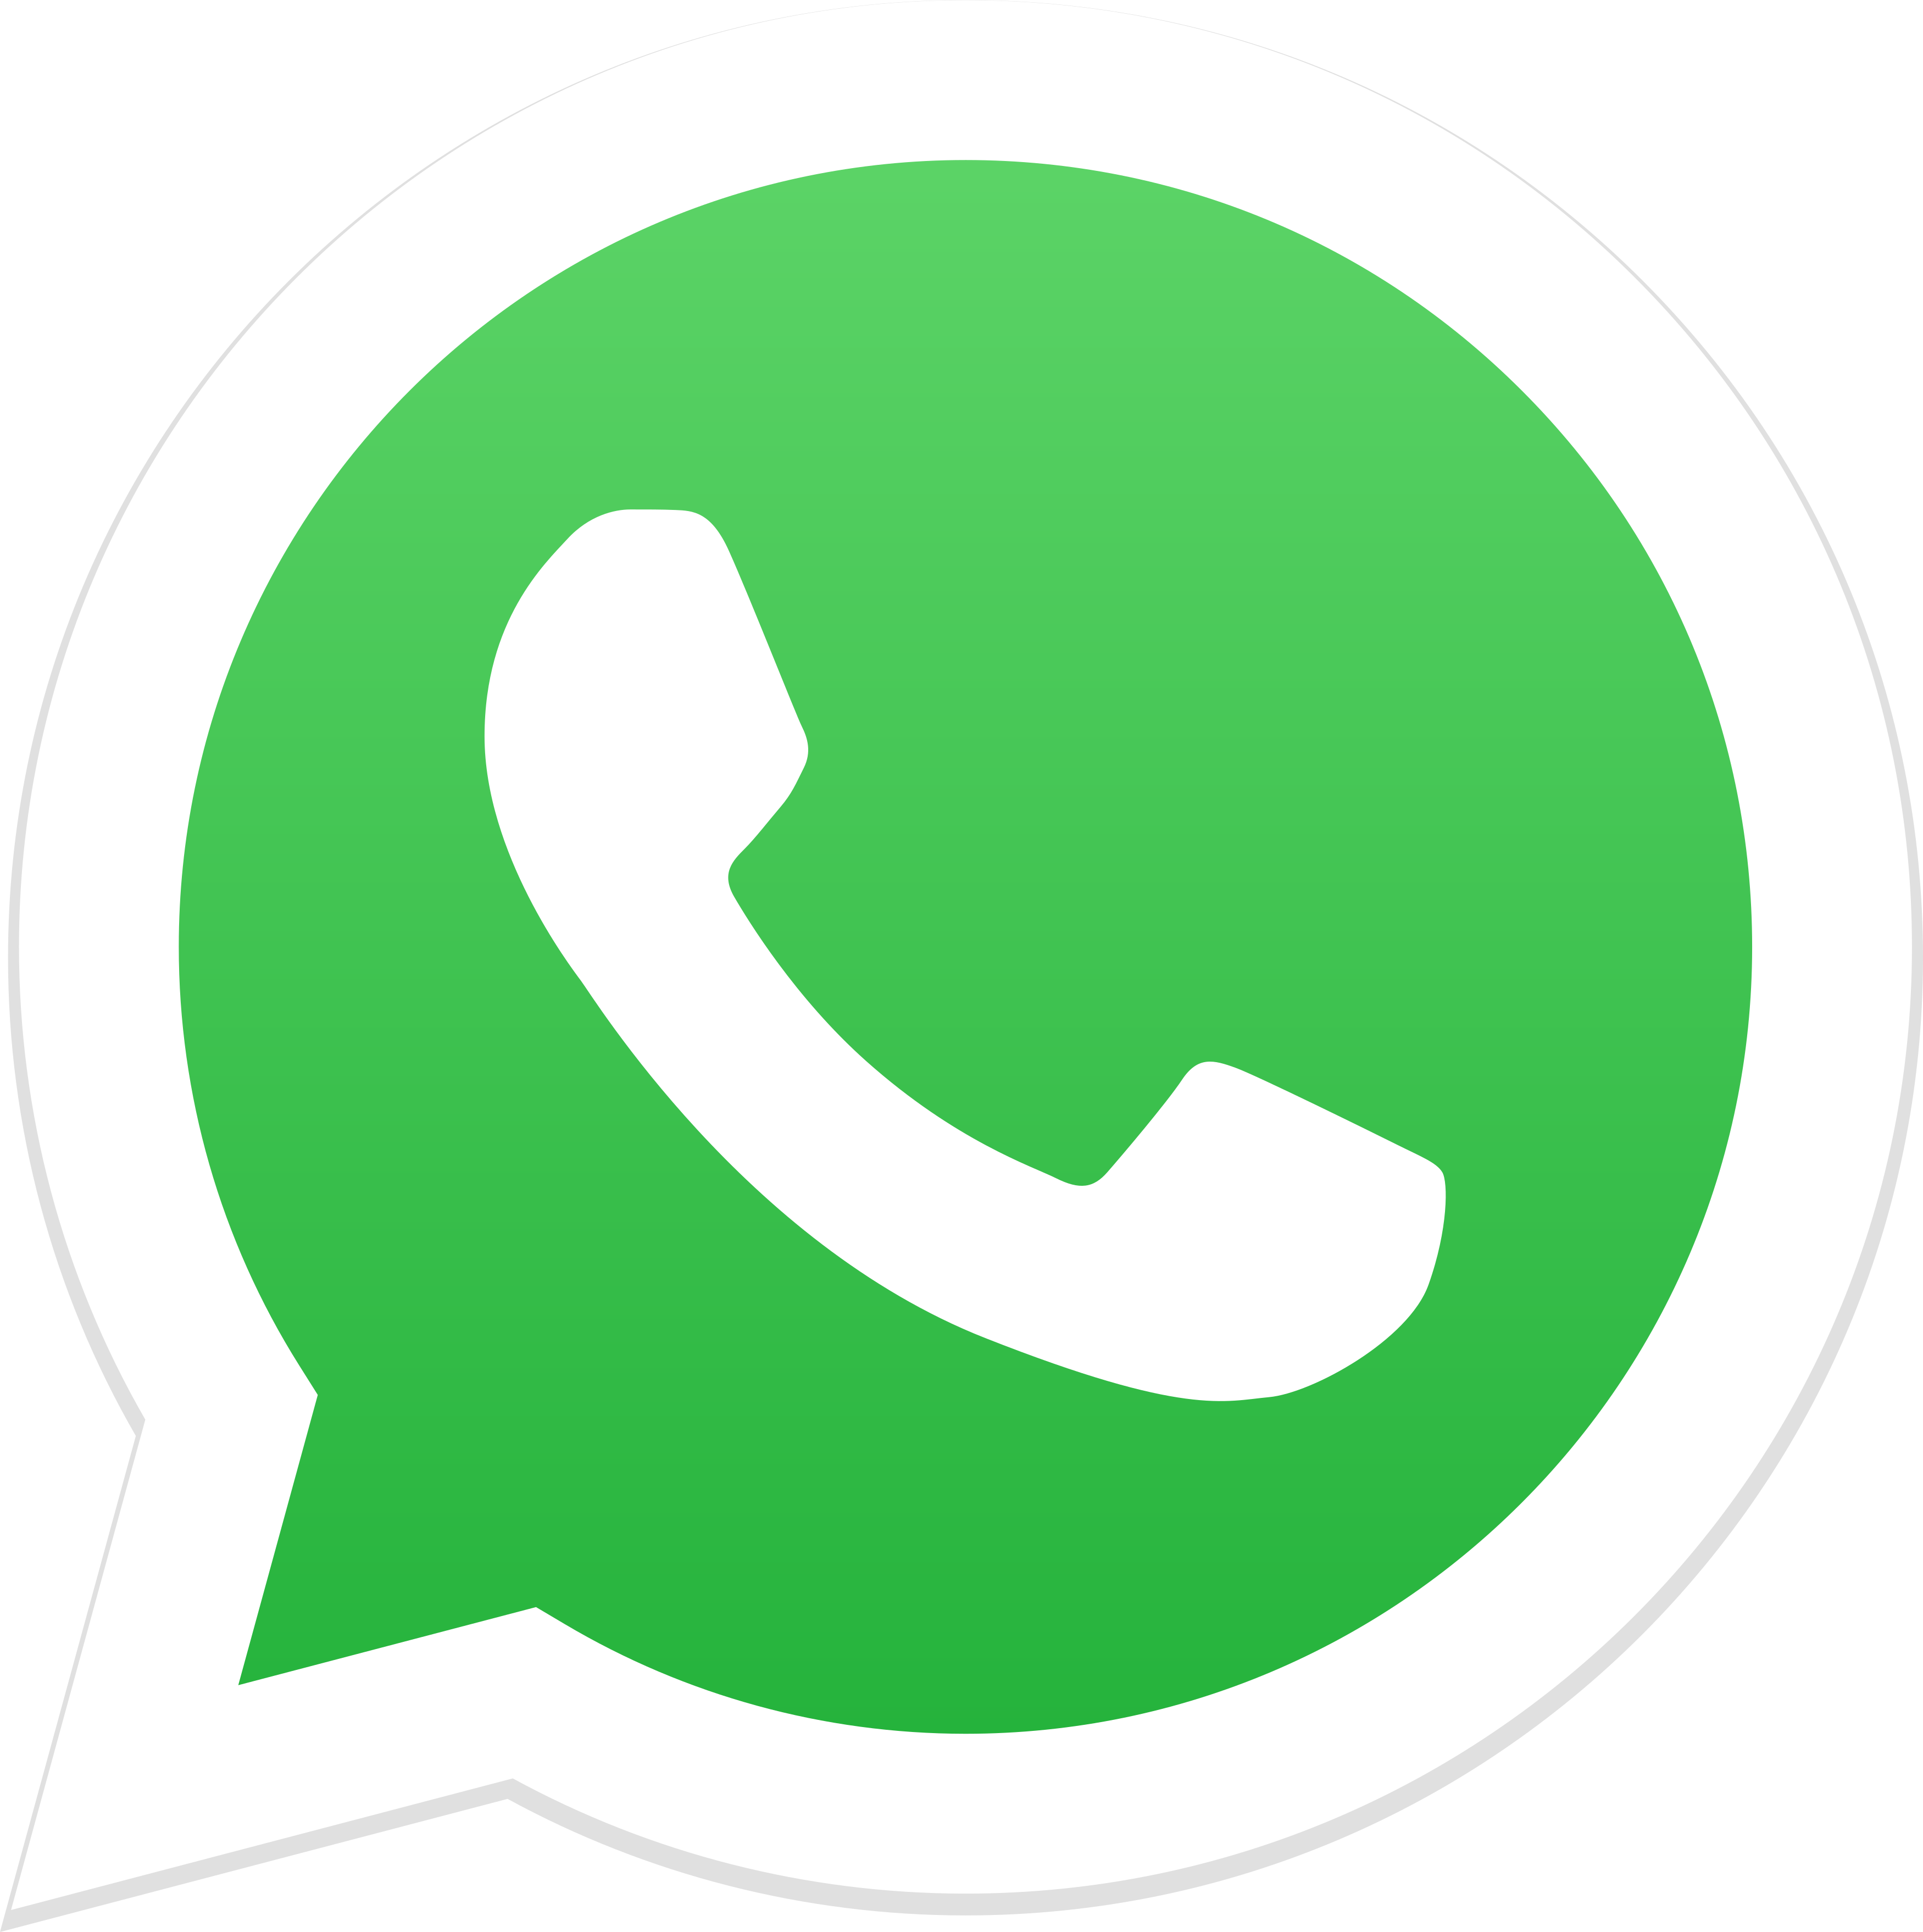 whatsapp logo 1 - Descubra 17 Fatos Surpreendentes sobre Jardins